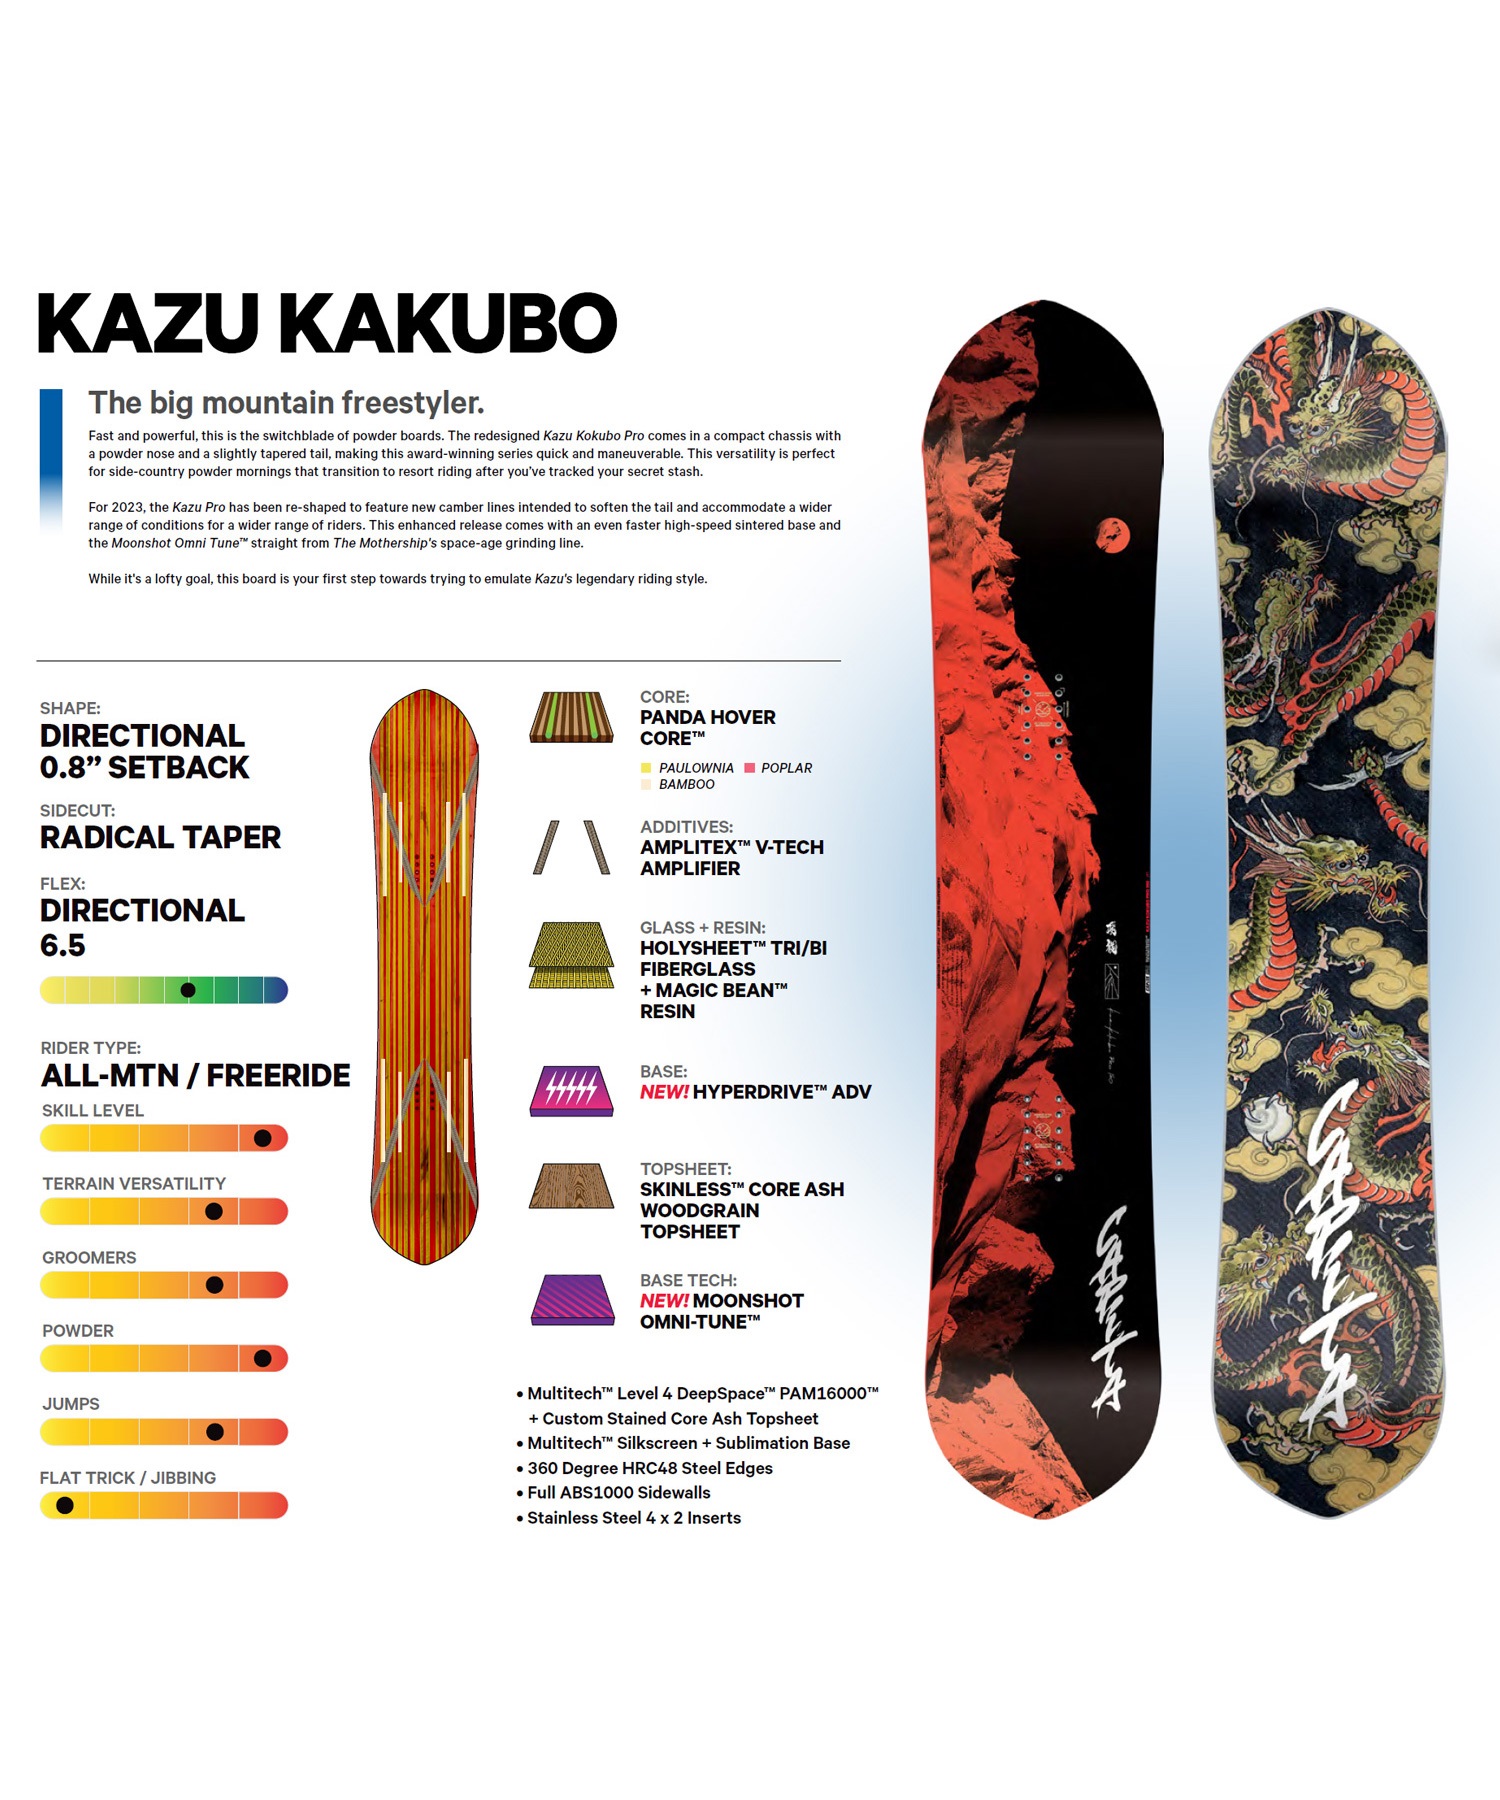 貴重】CAPiTA KAZU KOKUBO PRO 151cm スノーボード-